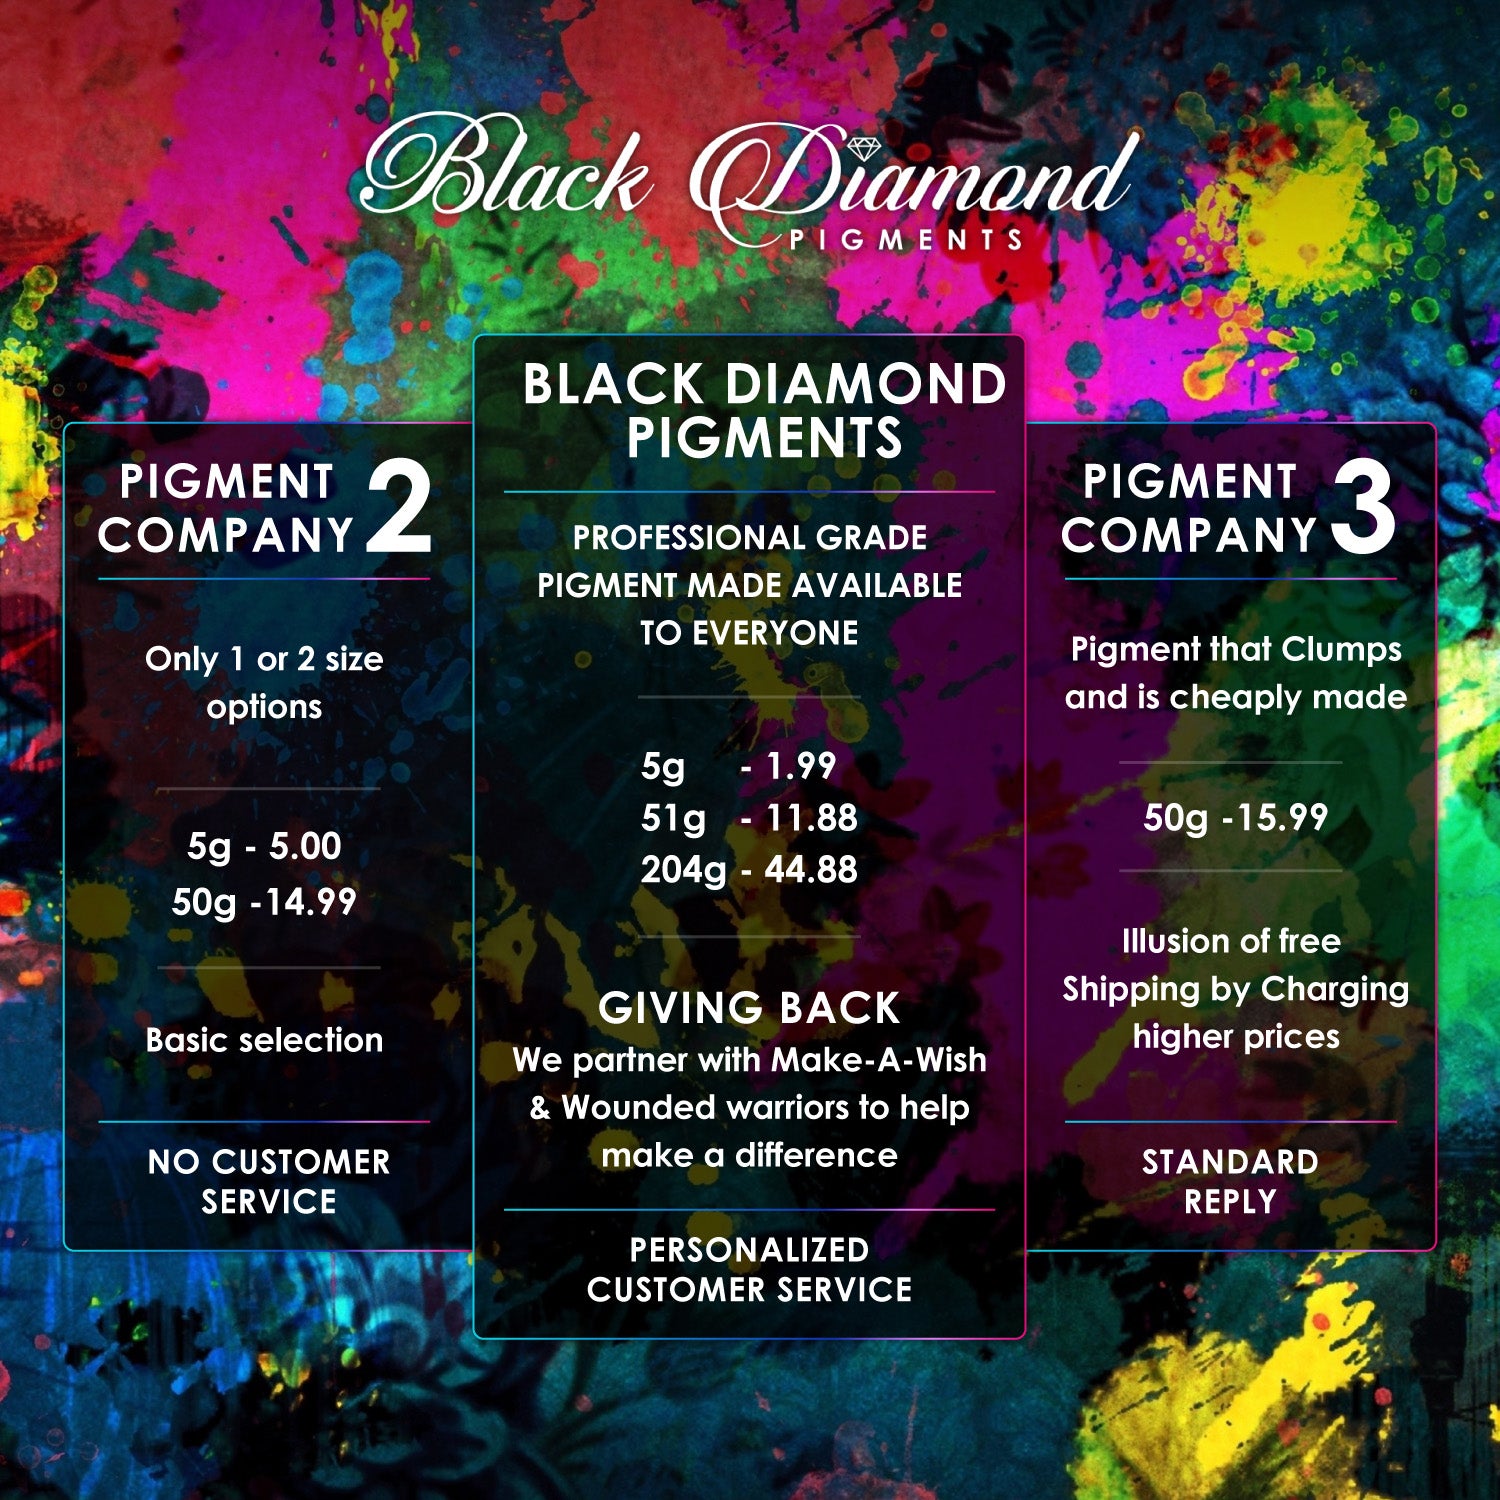 "PHOENIX" Black Diamond Pigments